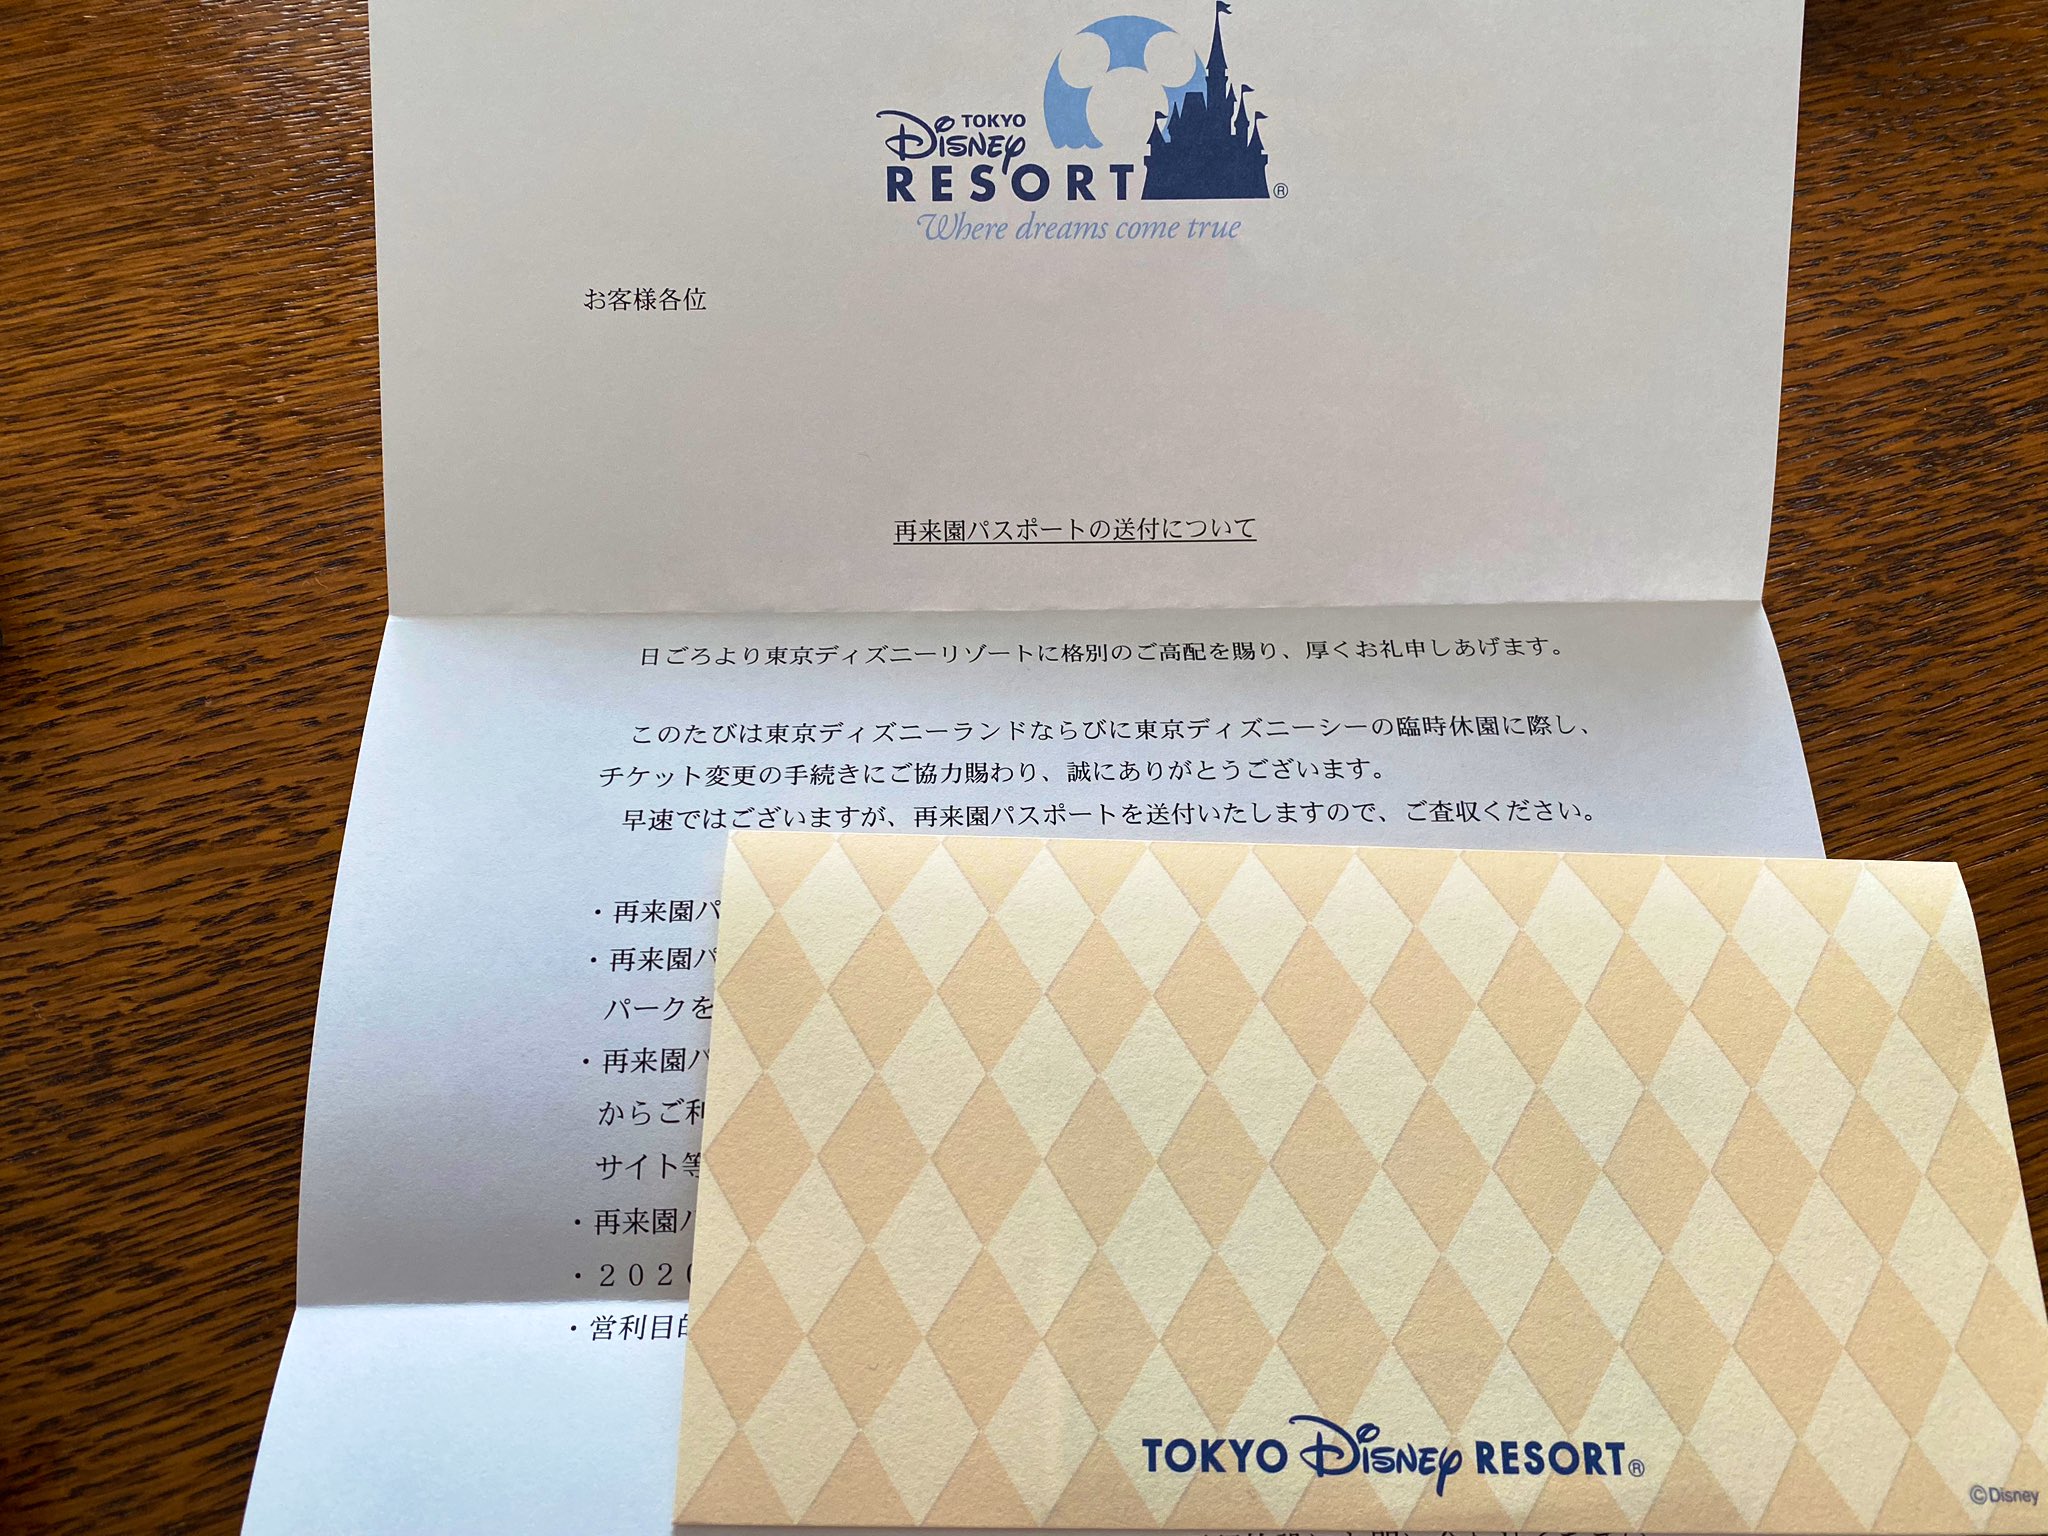 Shinichi Ando 東京ディズニーリゾート休園中に有効期限が切れるチケットの交換申込をした 再来園パスポートが簡易書留で届きました 安心して楽しめる日が早く来ますように T Co Uf1mhjdiqo Twitter